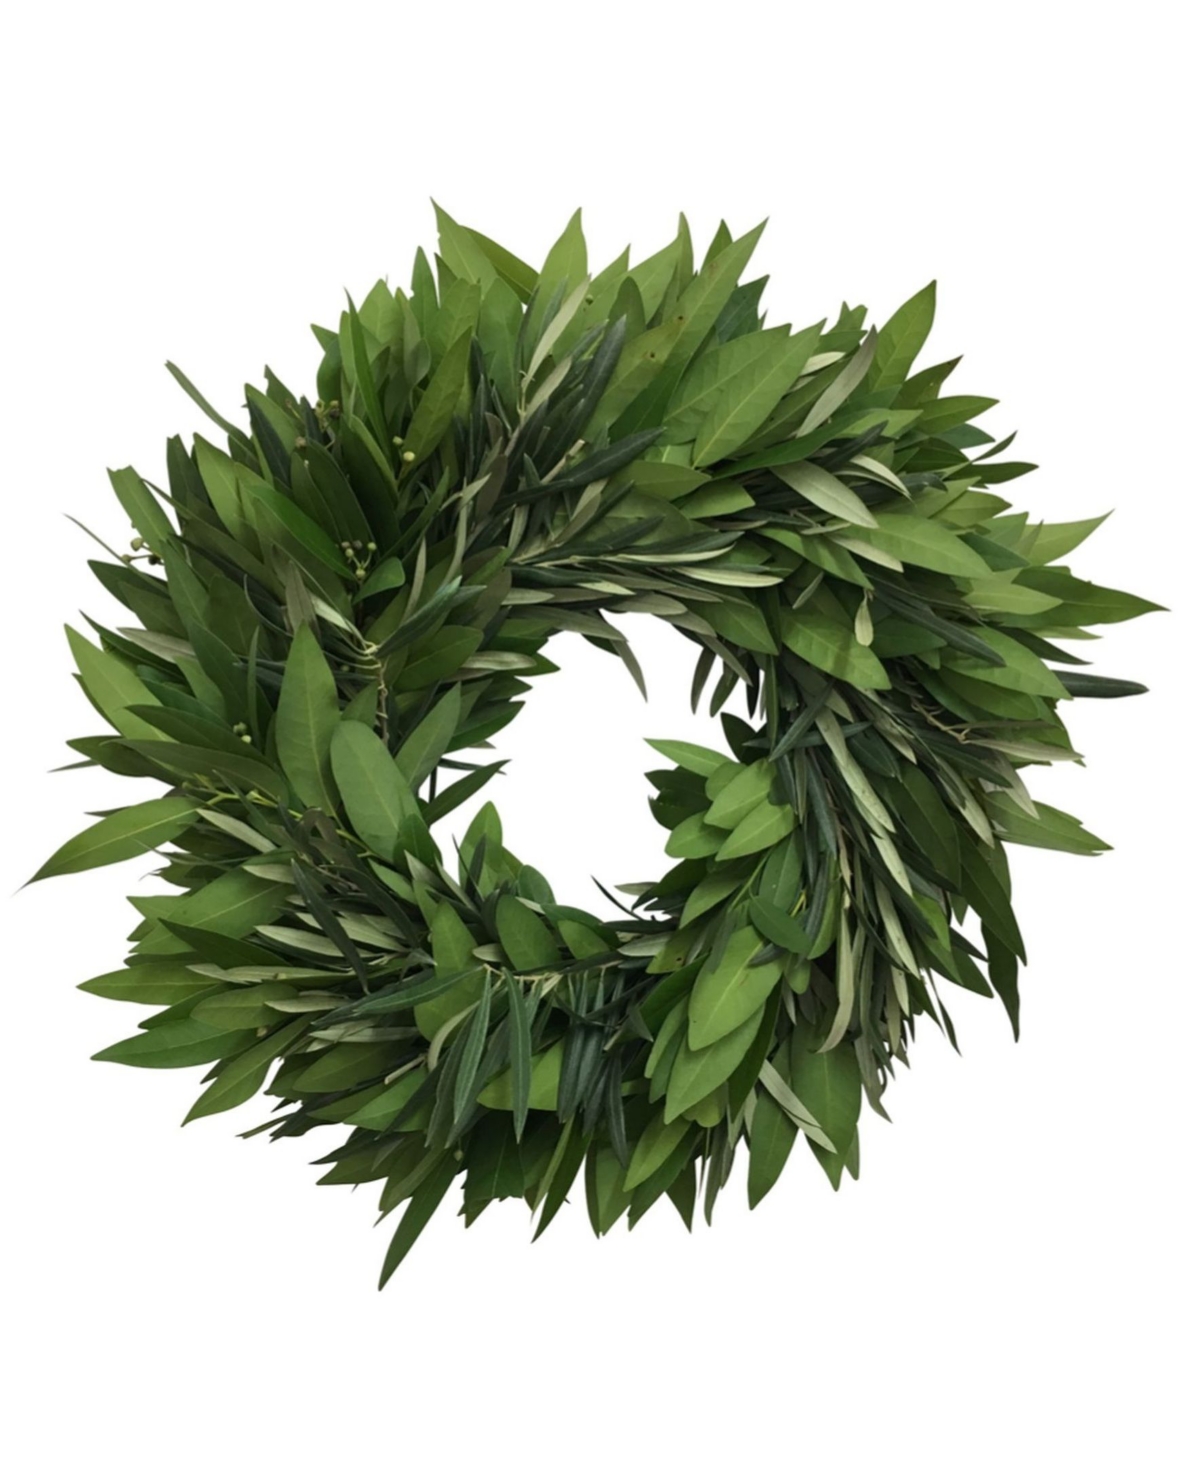 Fresh Bay Leaf and Olive Wreath, 20" - Green